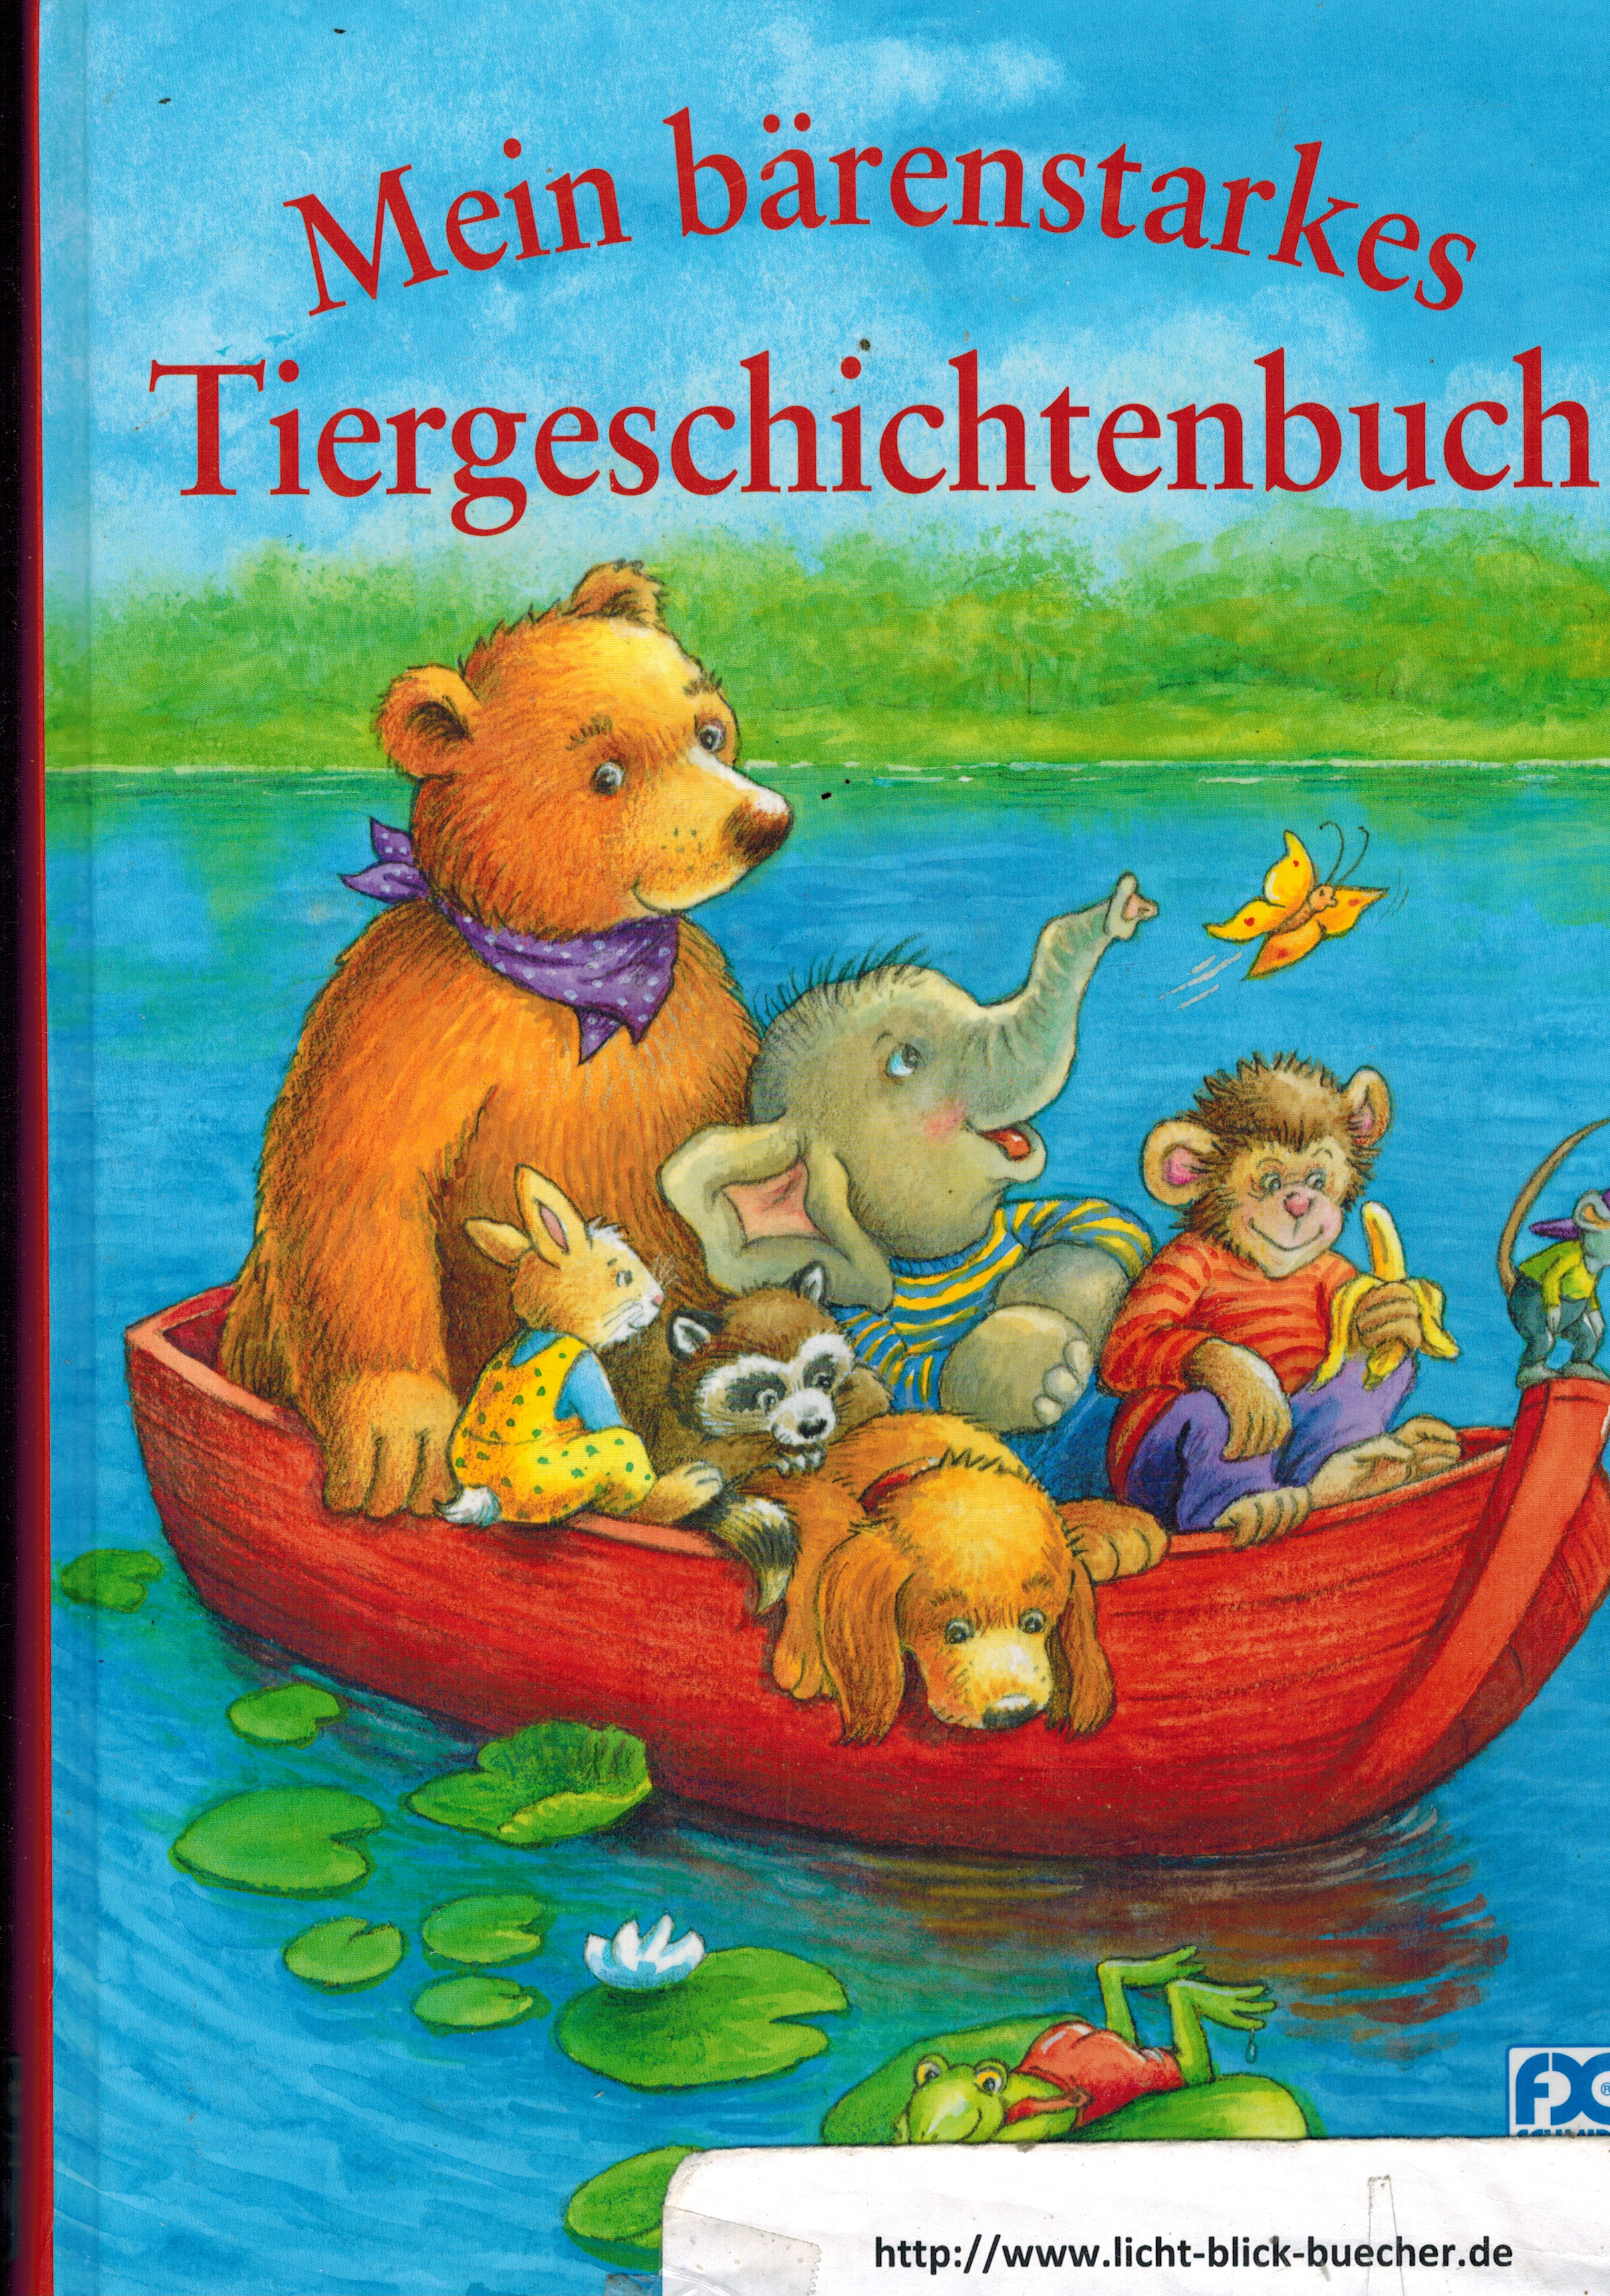 Mein baerenstarkes TiergeschichtenbuchSabine Schuler ///Carola Henke /// Christine Georg